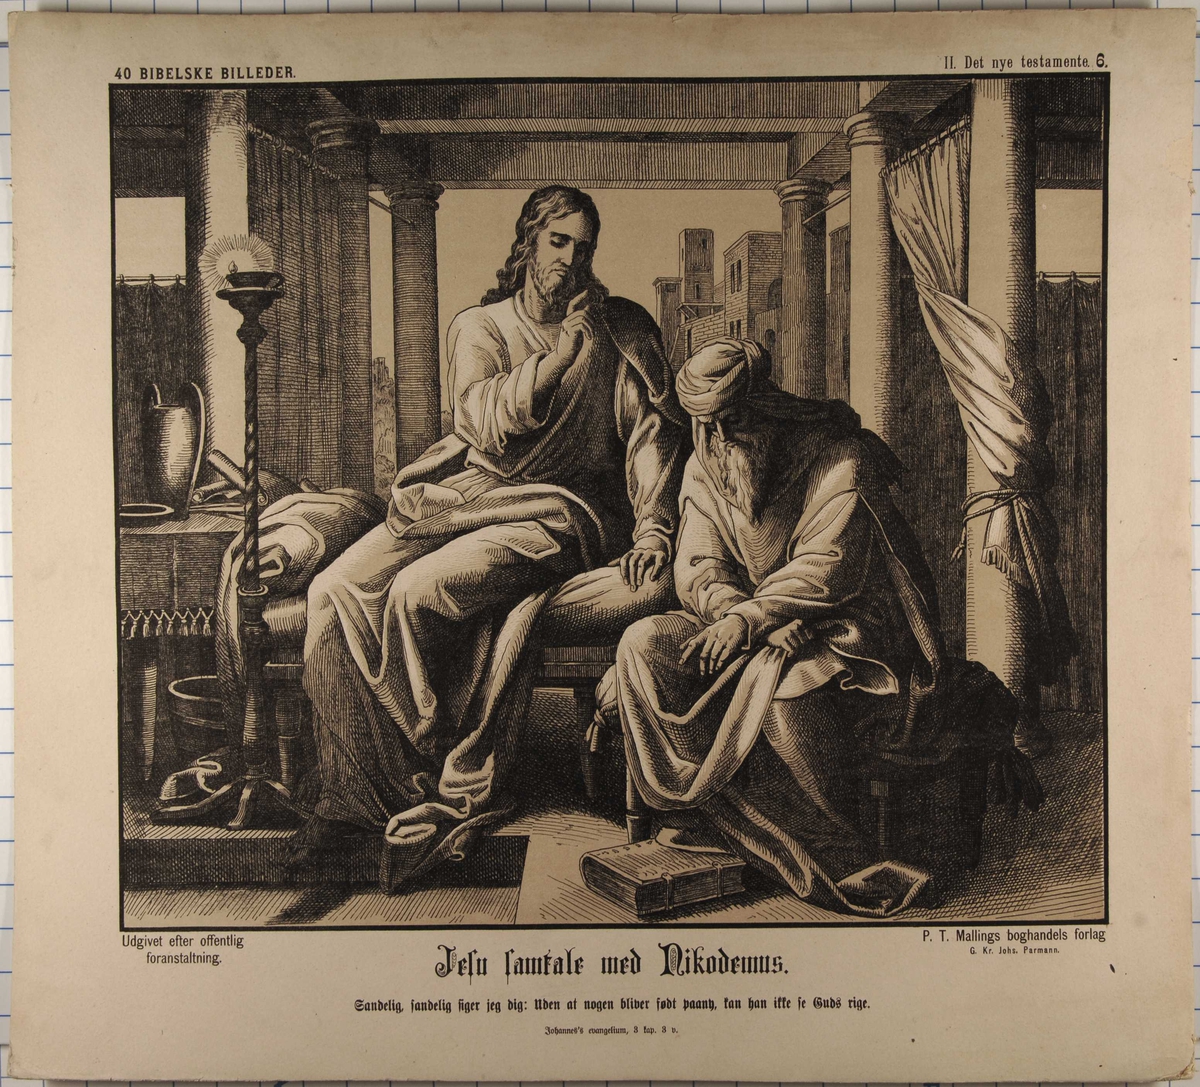 Jesu samtale med Nikodemus.